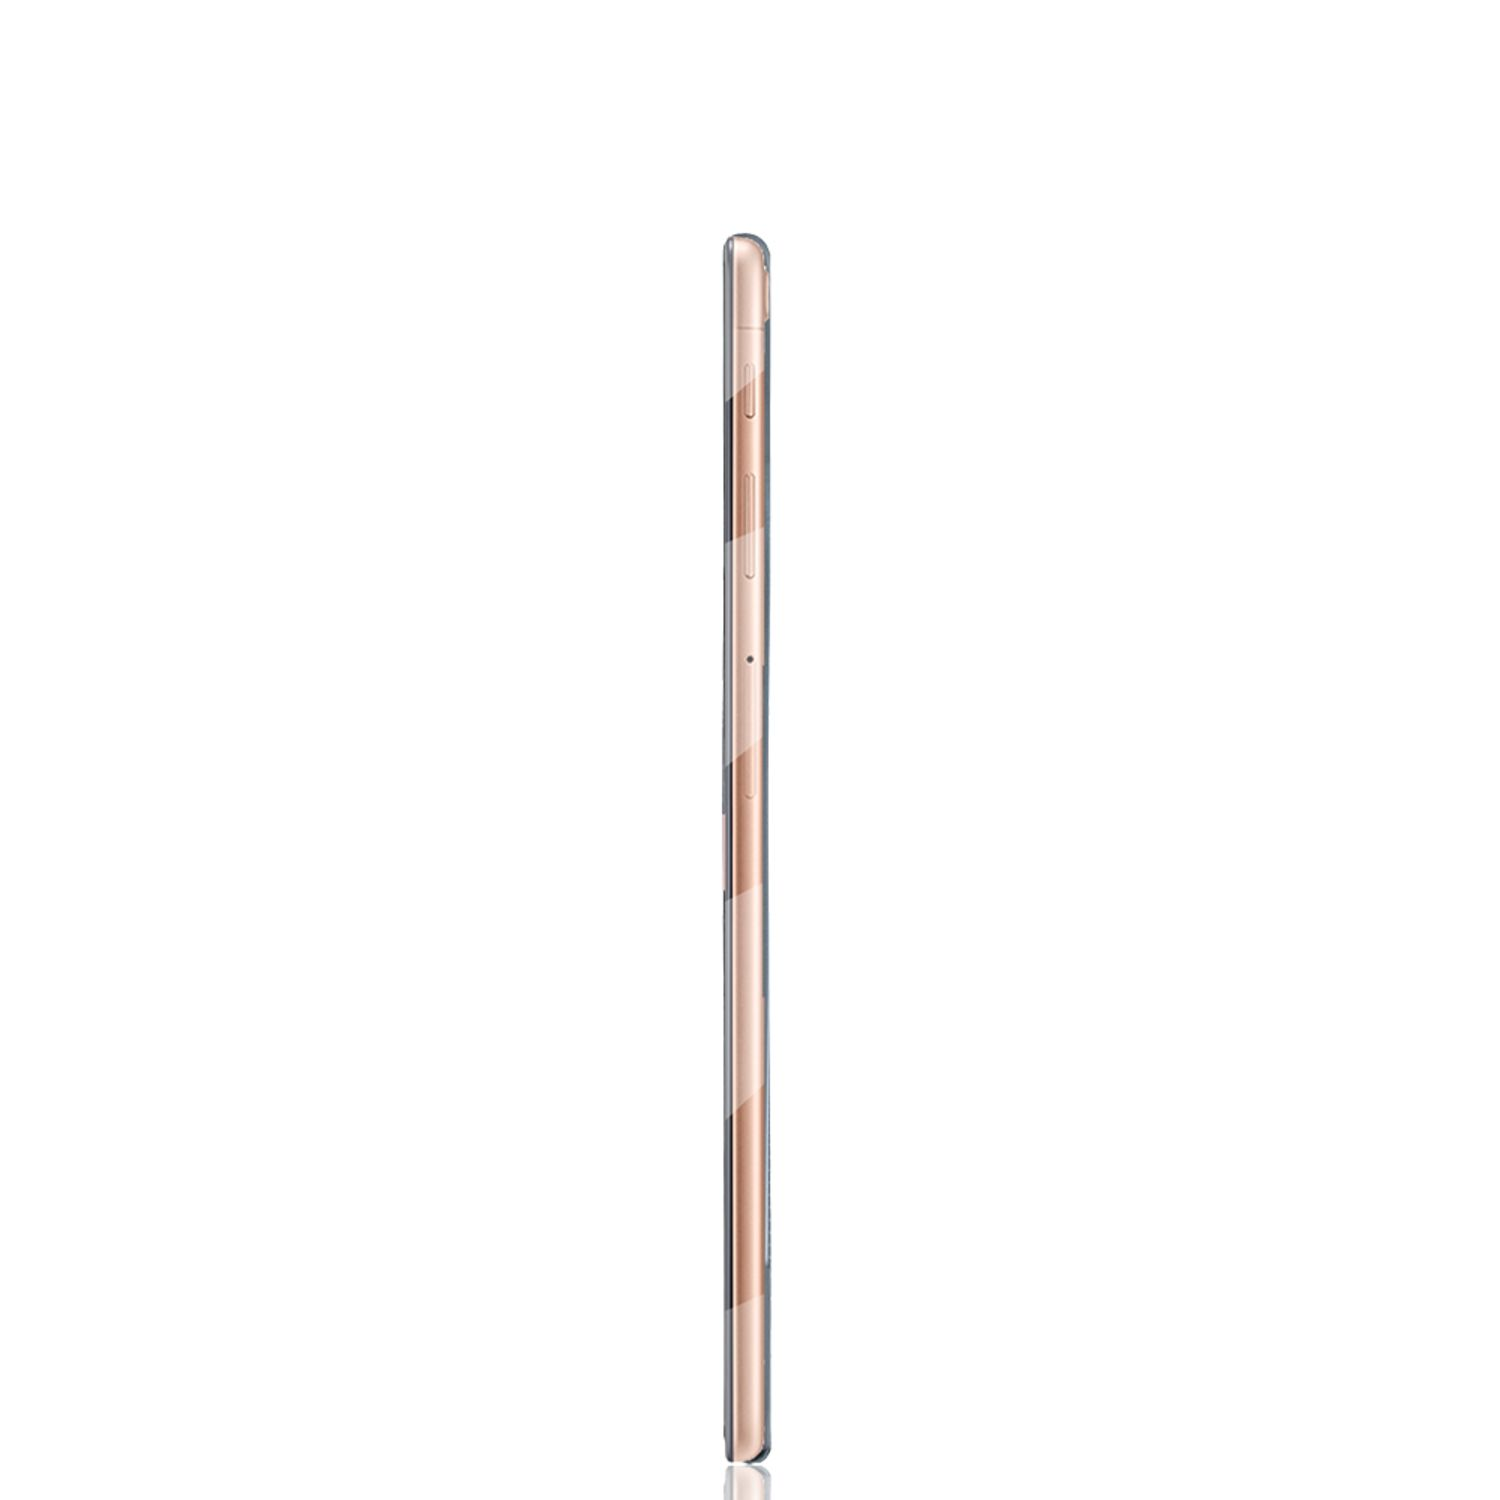 KÖNIG DESIGN Tablet Hülle Kunststoff, Samsung für Transparent Tablethülle Backcover